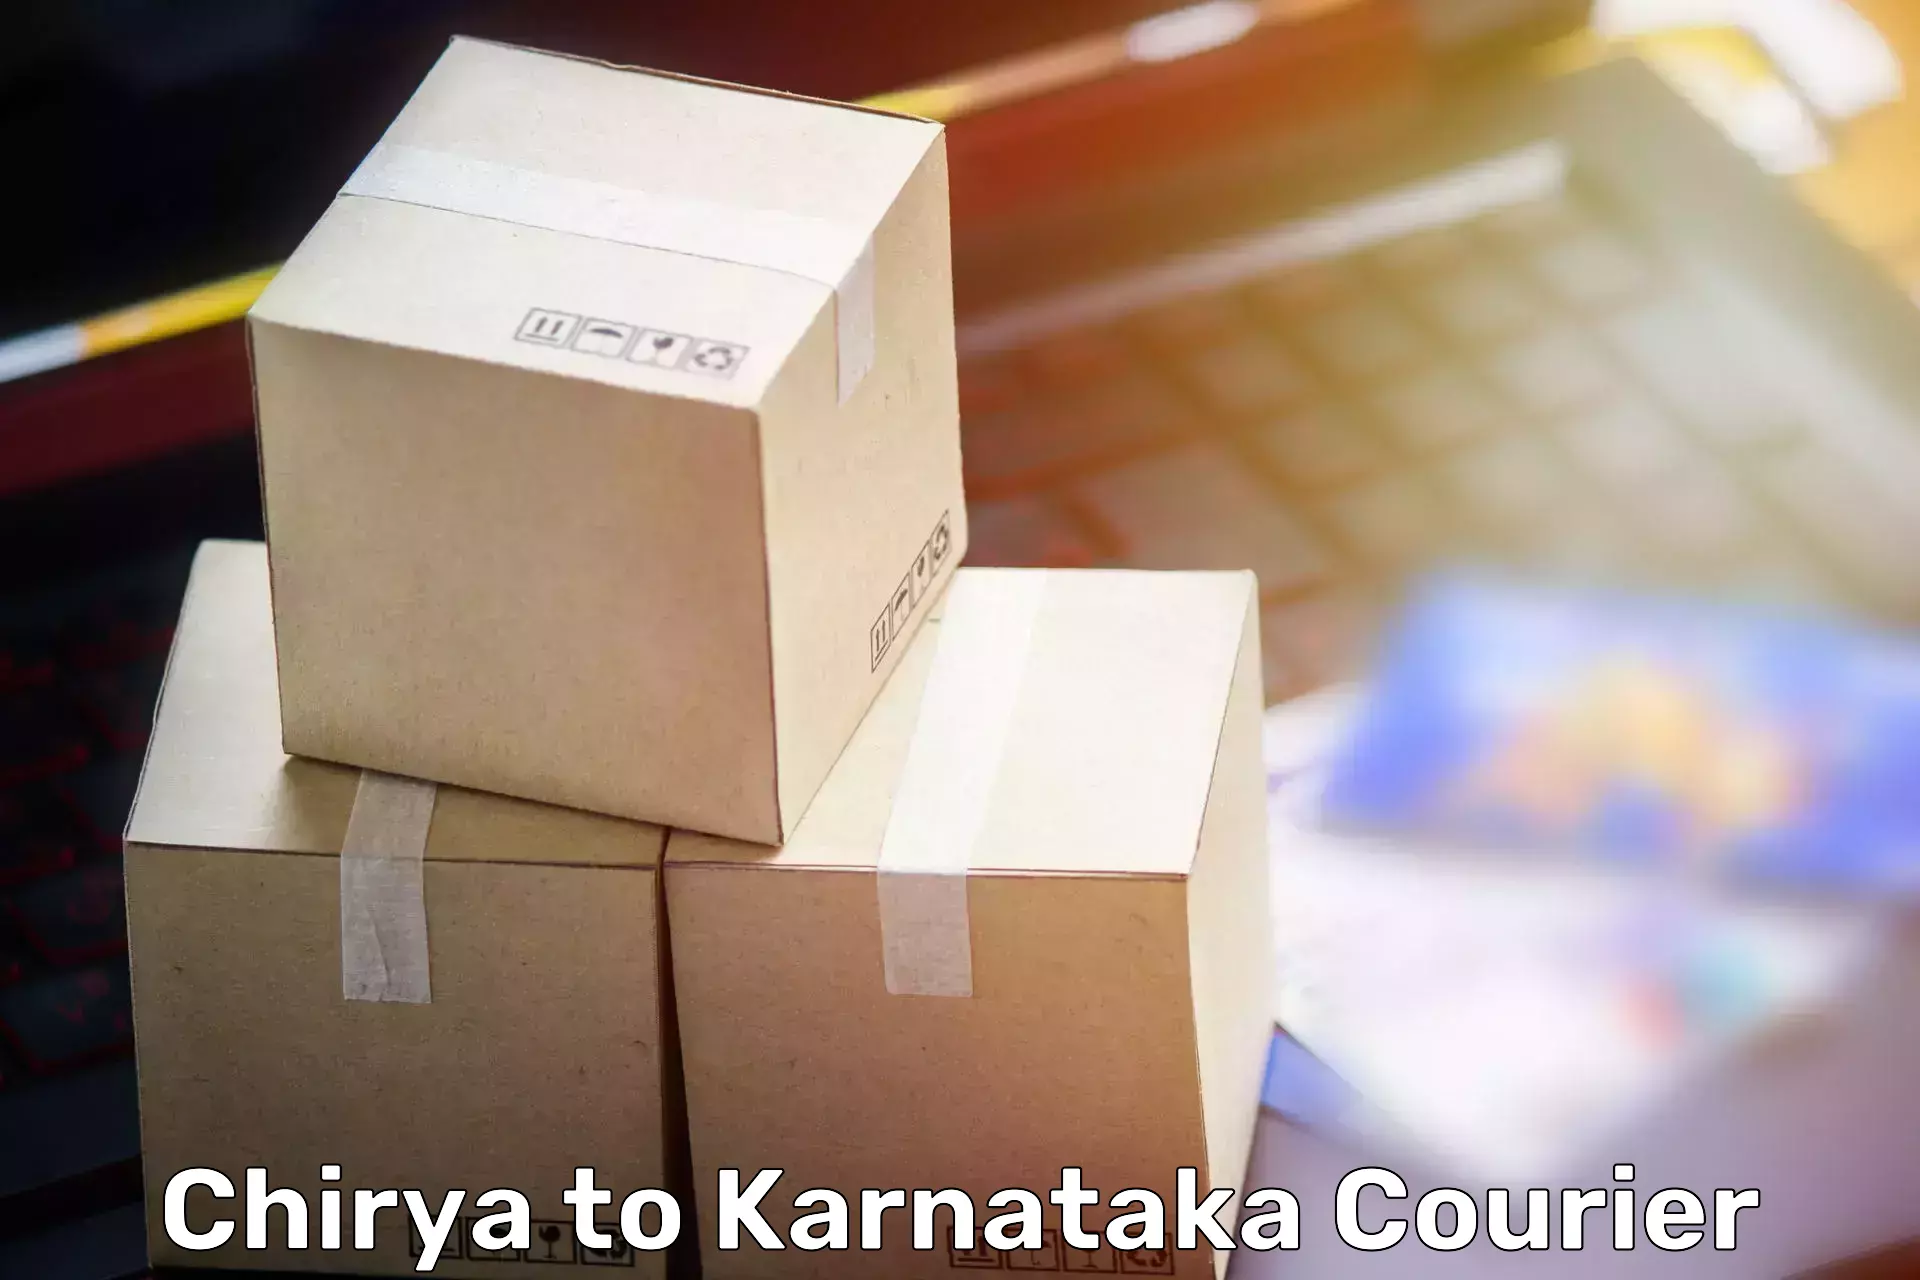 Budget-friendly movers Chirya to Karnataka